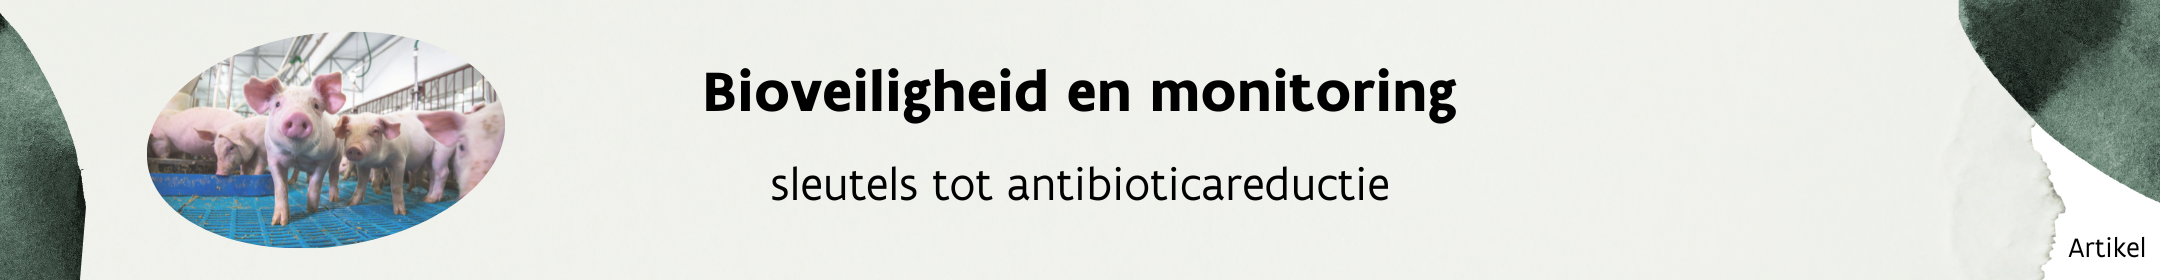 Bioveiligheid en monitoring, sleutels tot antibioticareductie